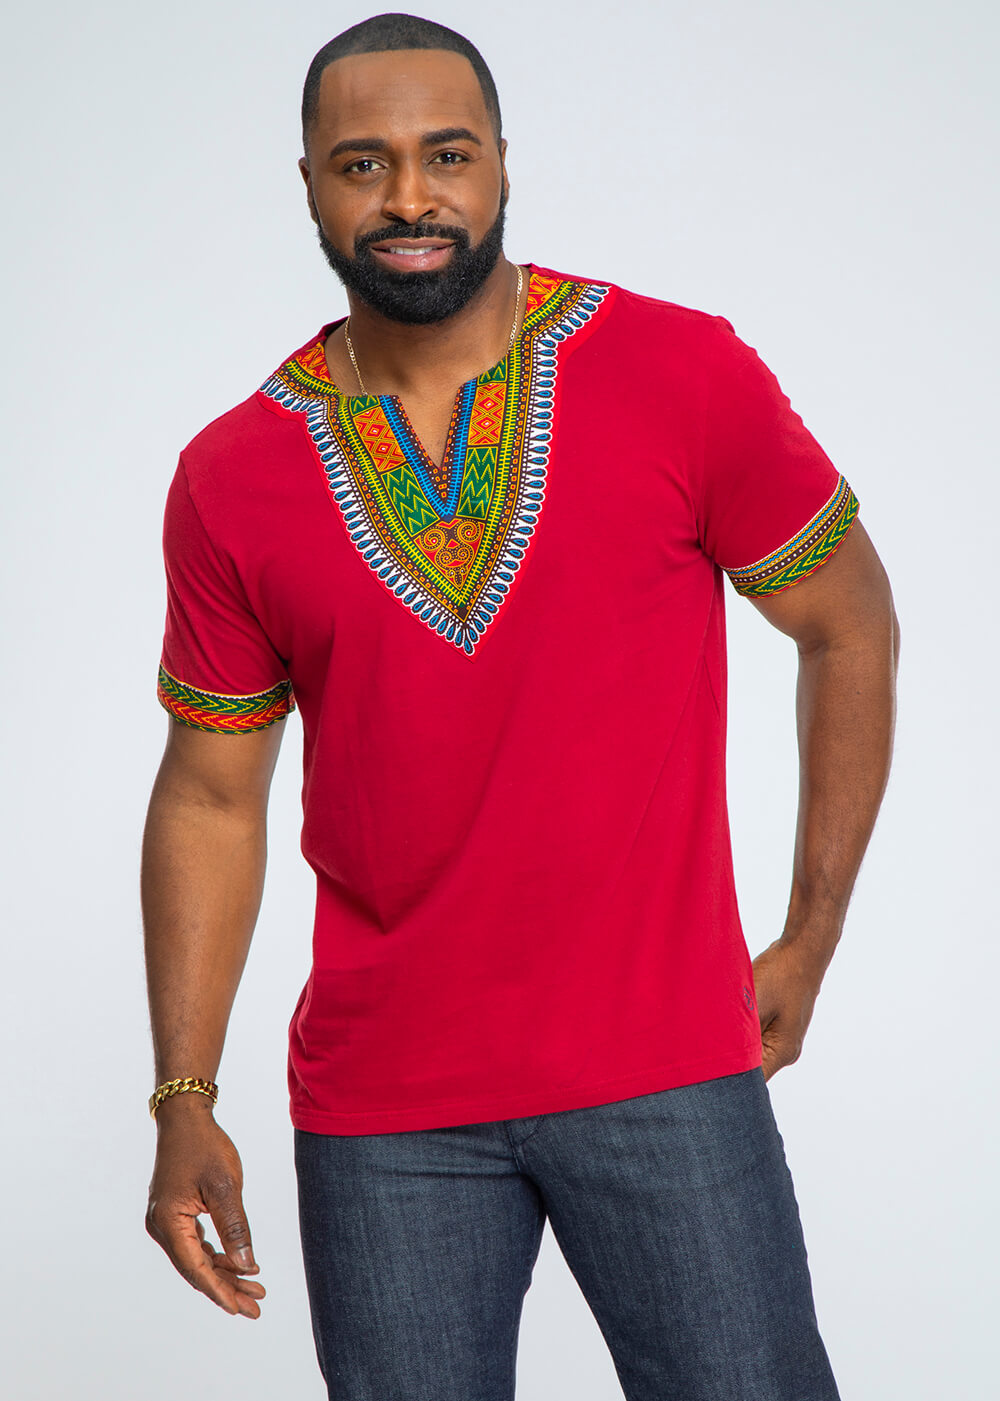 Men's African Print Men's Dashiki T-Shirt (Maroon)